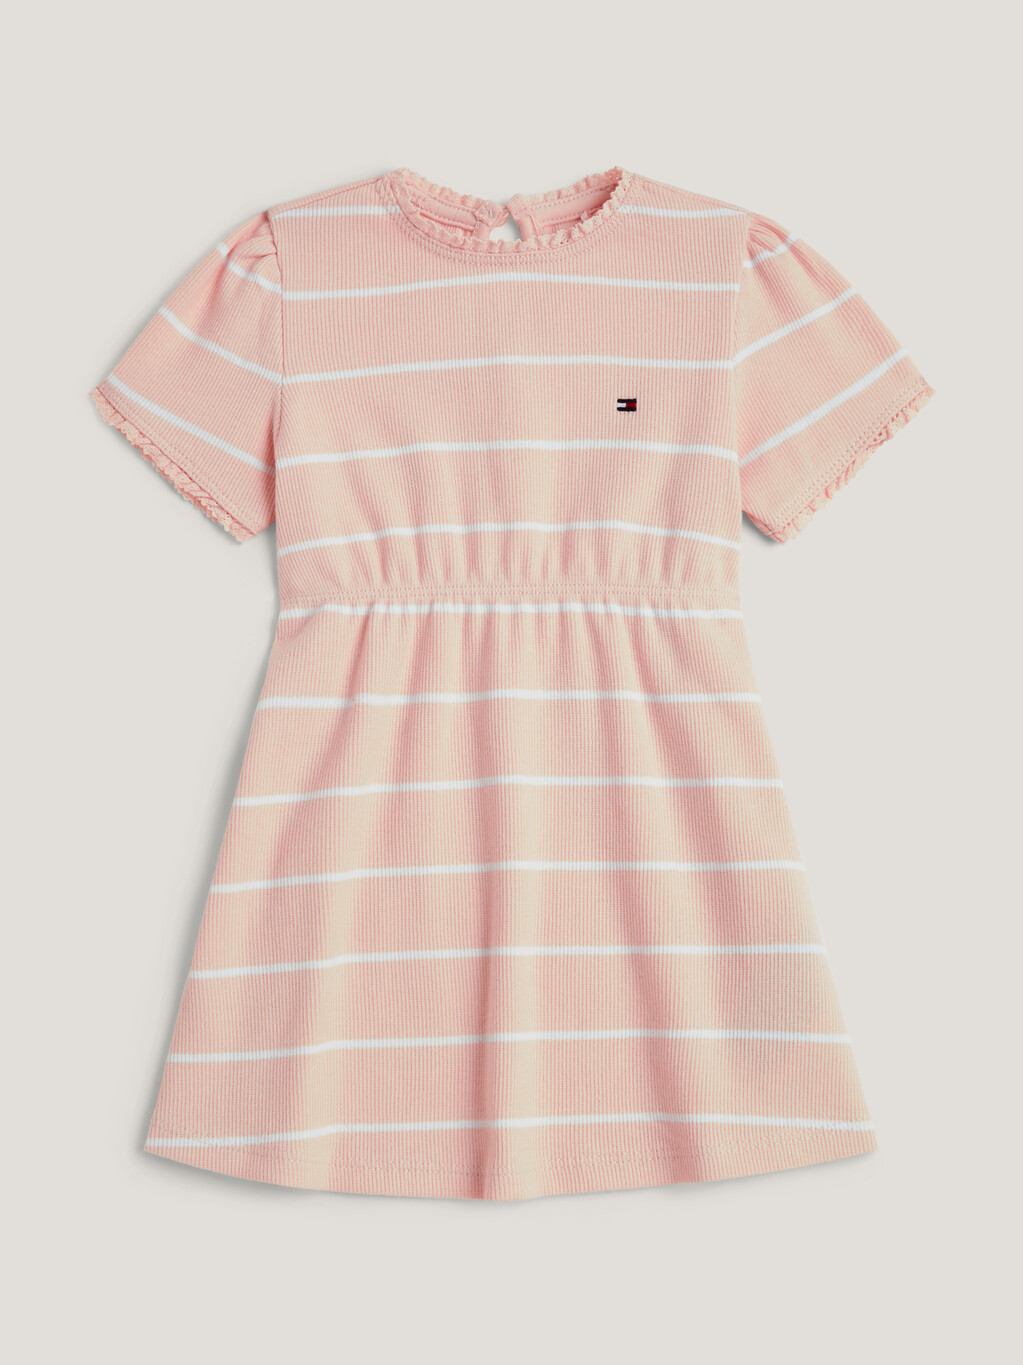 女嬰條紋連身裙, Whimsy Pink / White Stripe, hi-res